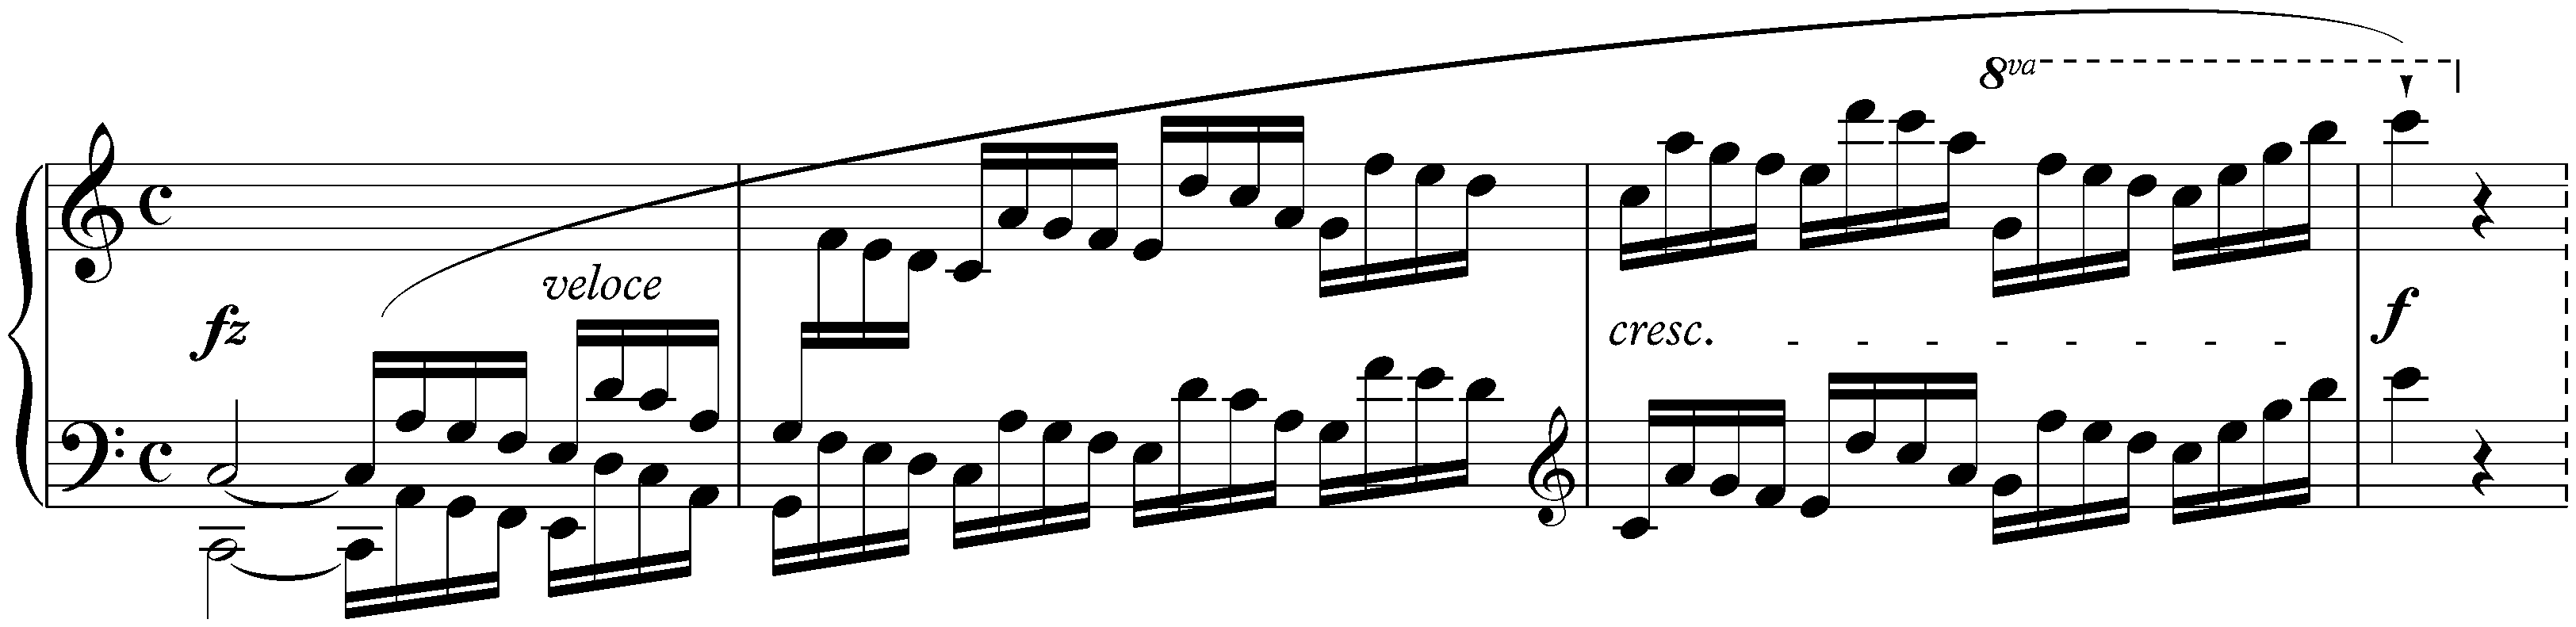 Rondo in C major, op. 73